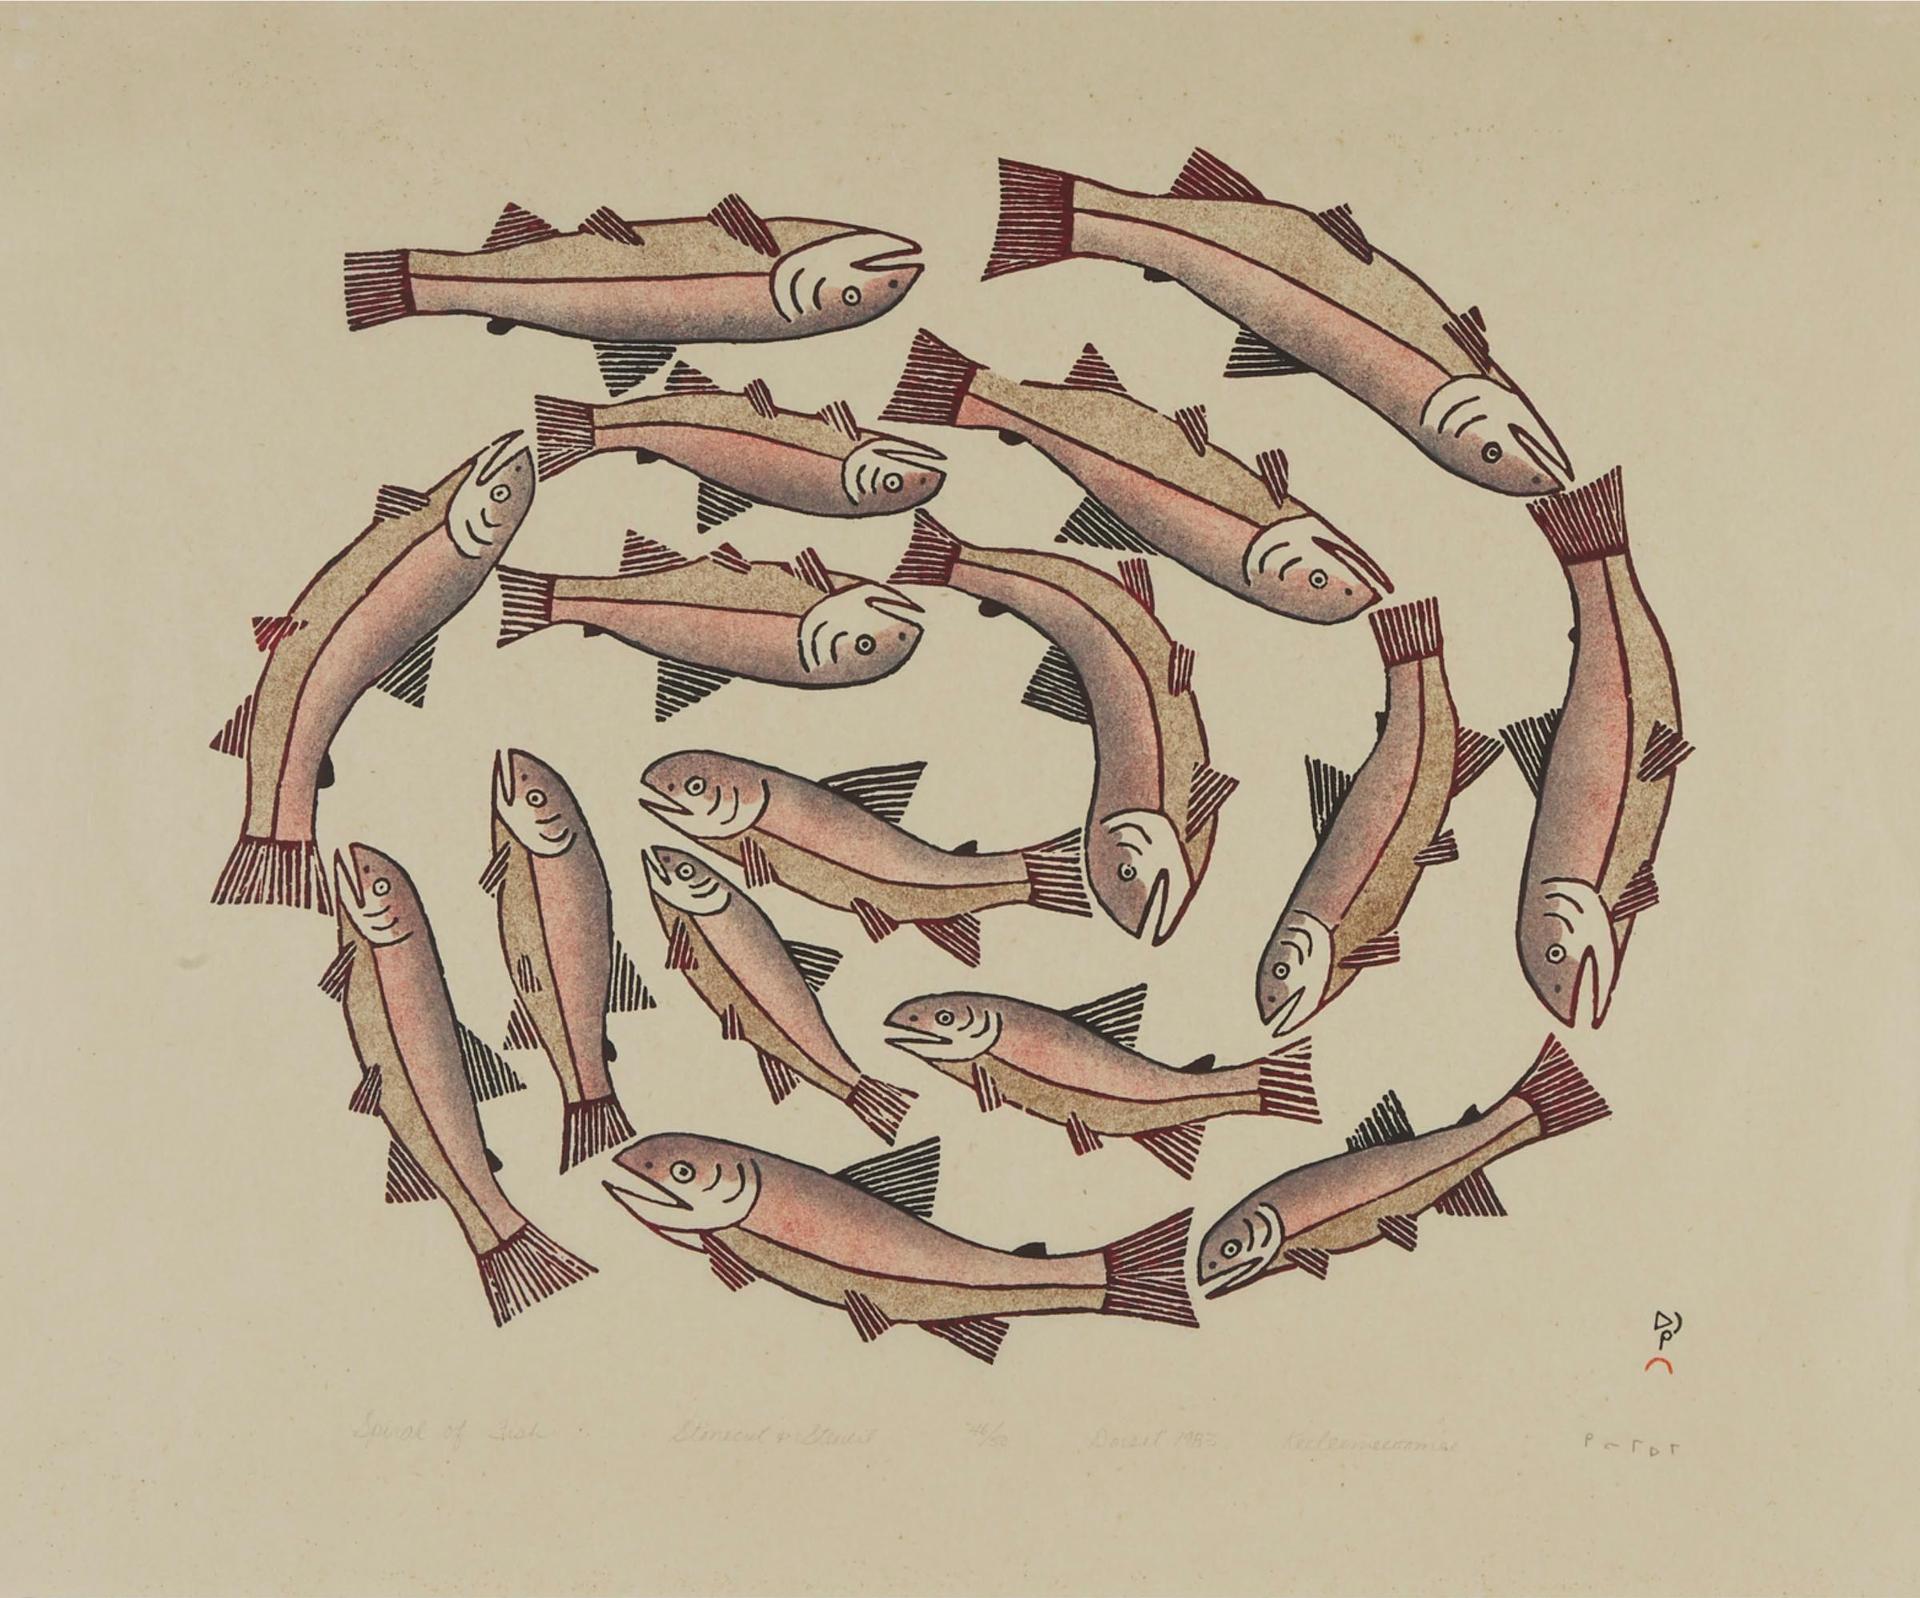 Keeleemeeoomee Samualie (1919-1983) - Spiral Of Fish